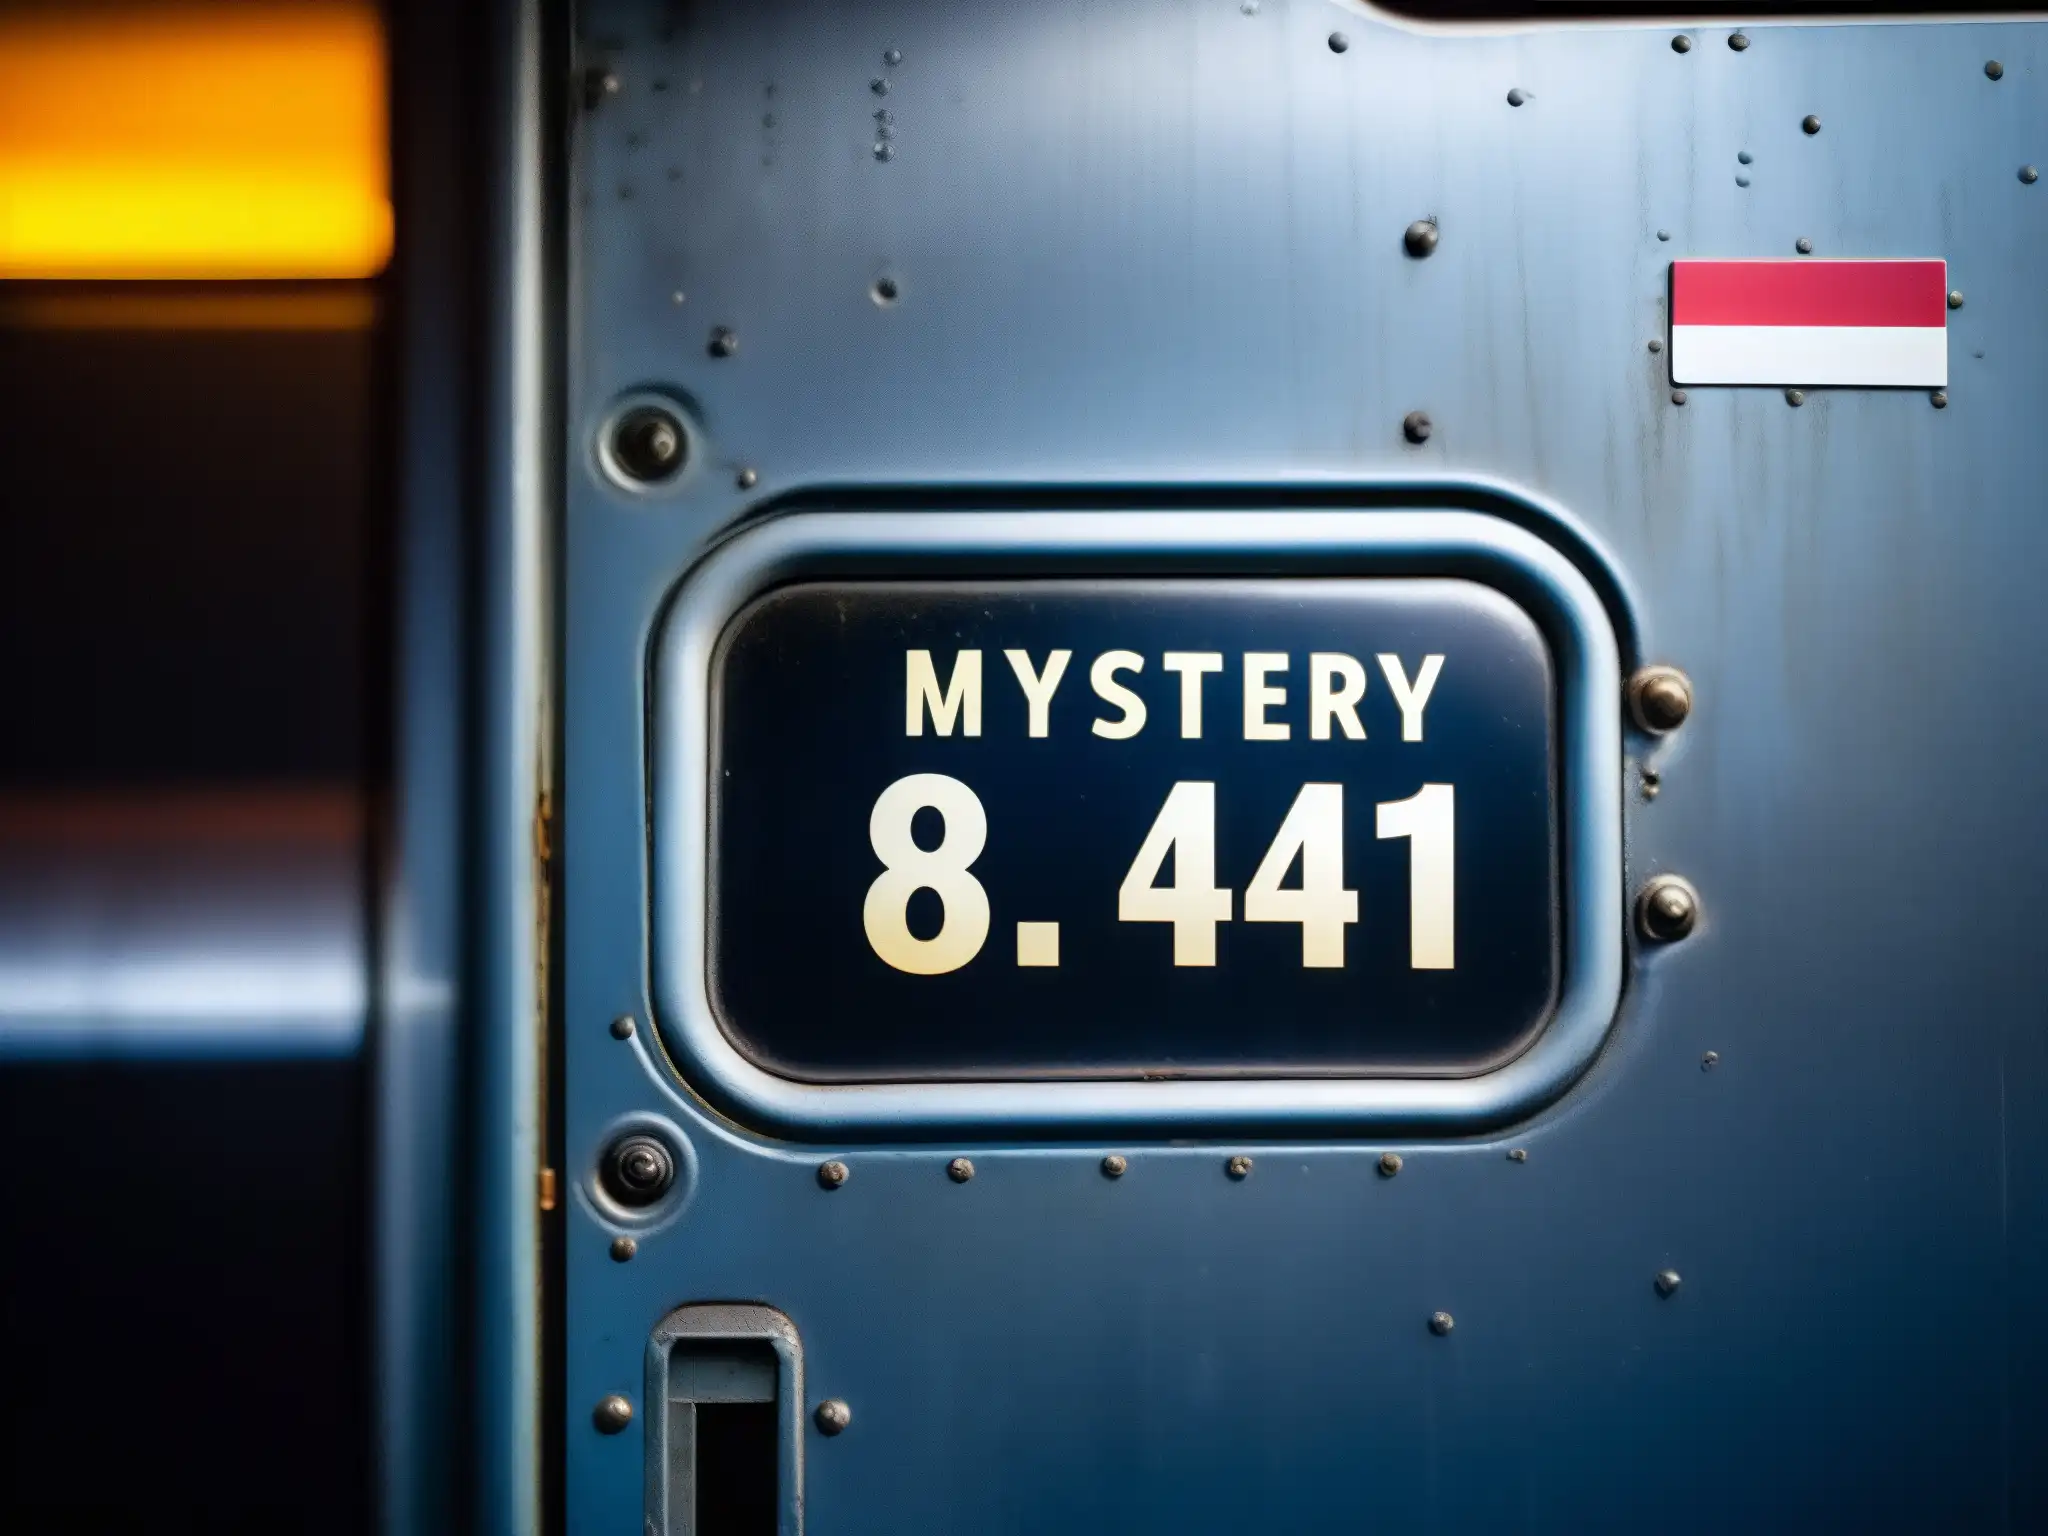 Detalle intrigante de la puerta desgastada de la cabina del vuelo 814, evocando misterio y suspenso